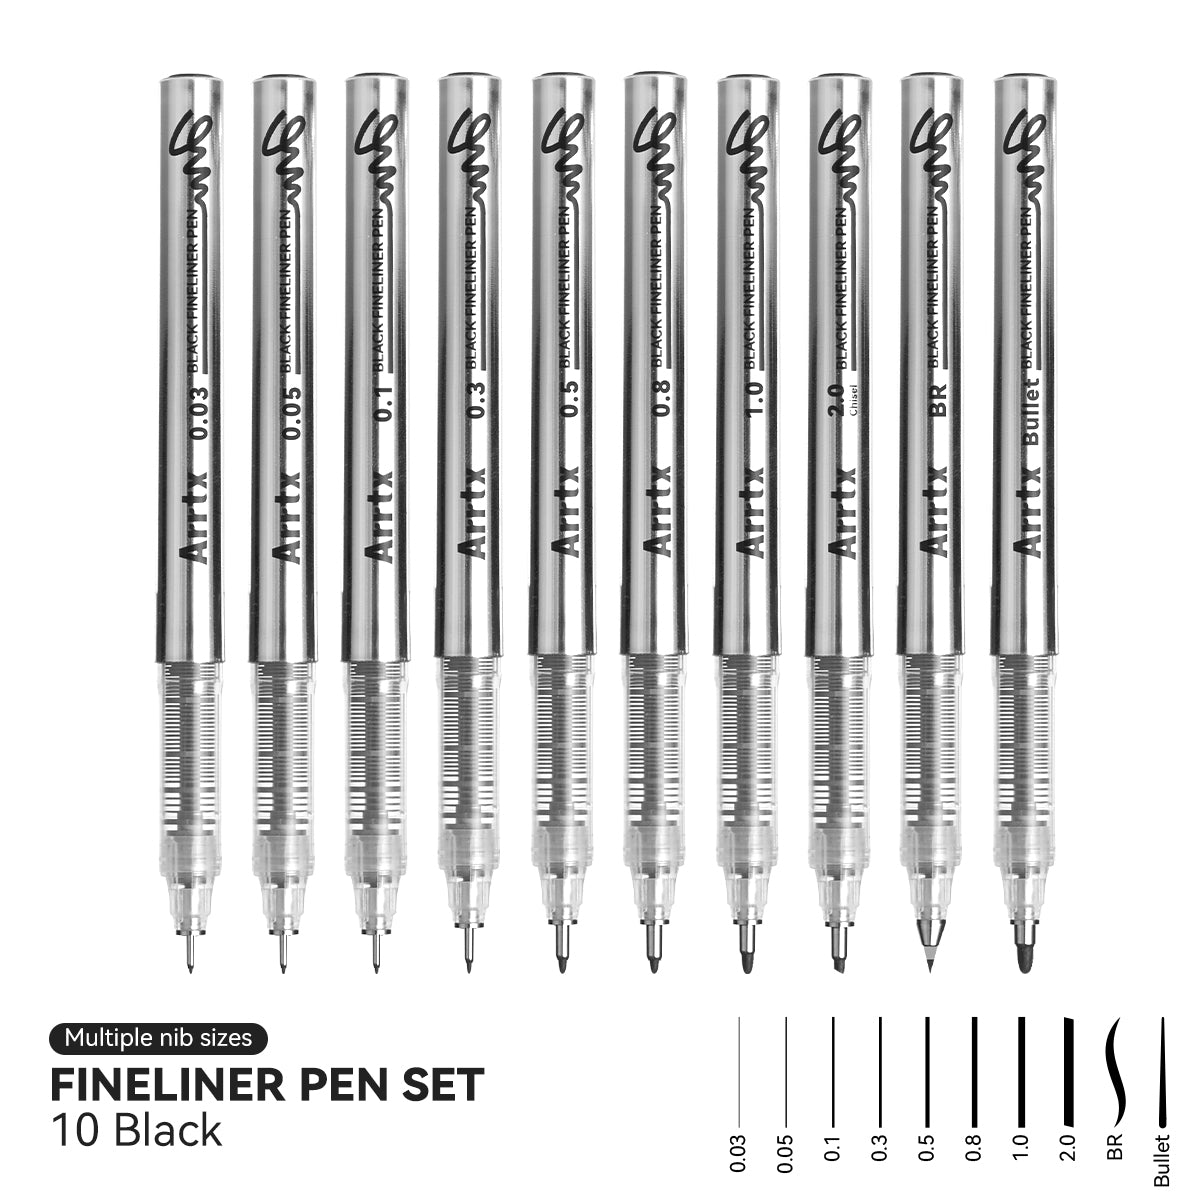 Arrtx Fineliner Pen Set 10 Pack Black Color Gel Pens 10 Nibs for Artwork